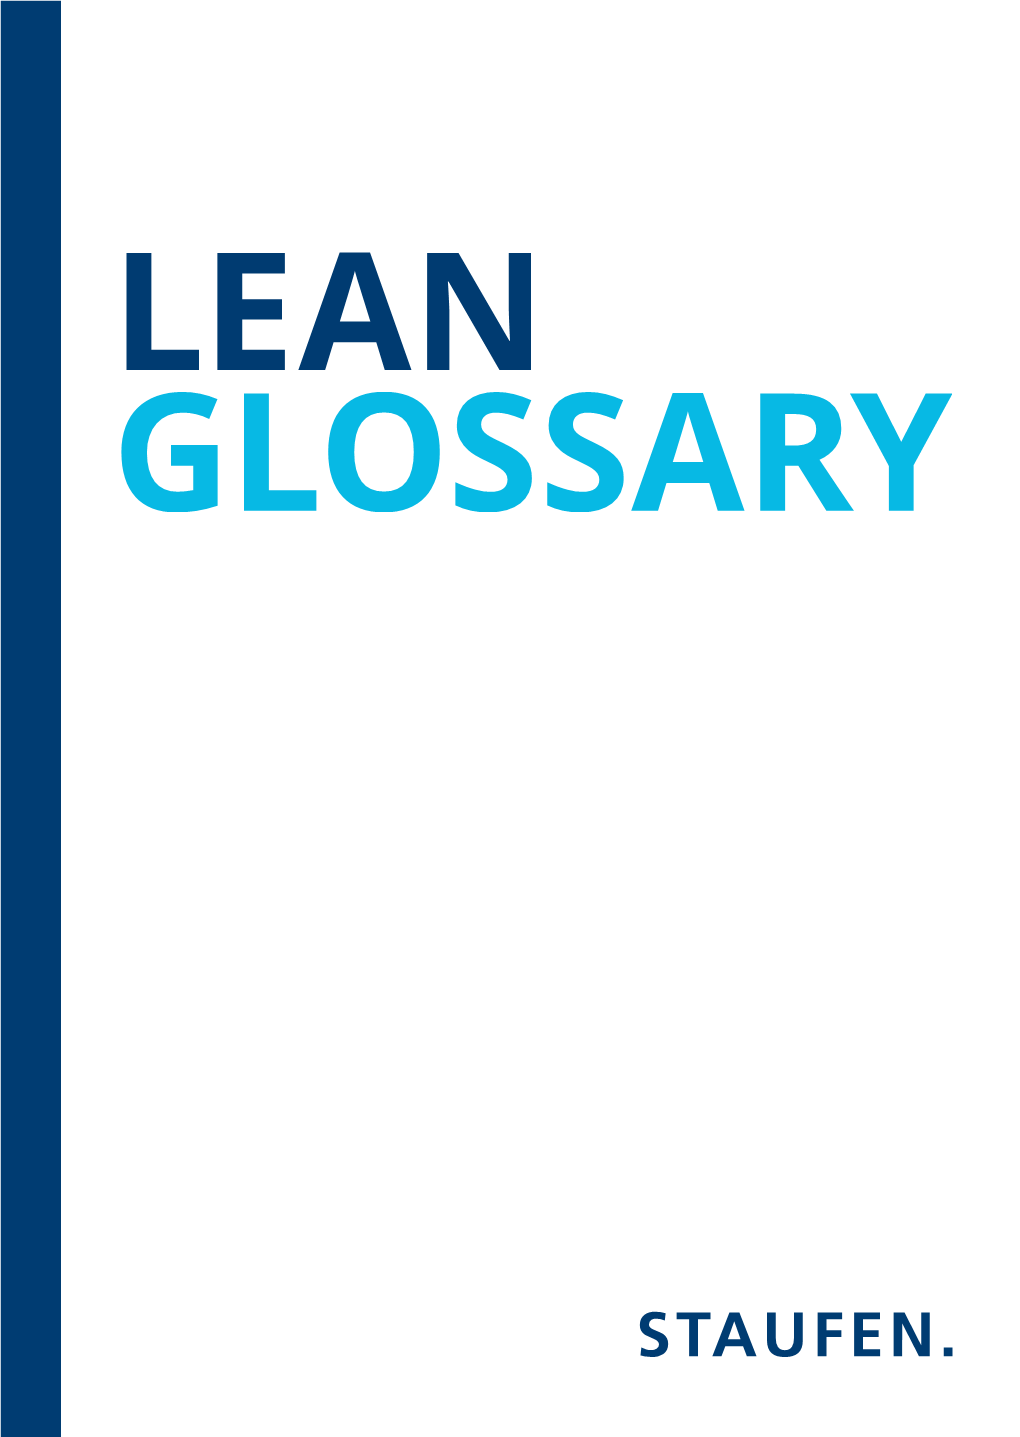 Lean Glossary 0-8 Lean Glossar Lean Glossar 0-8